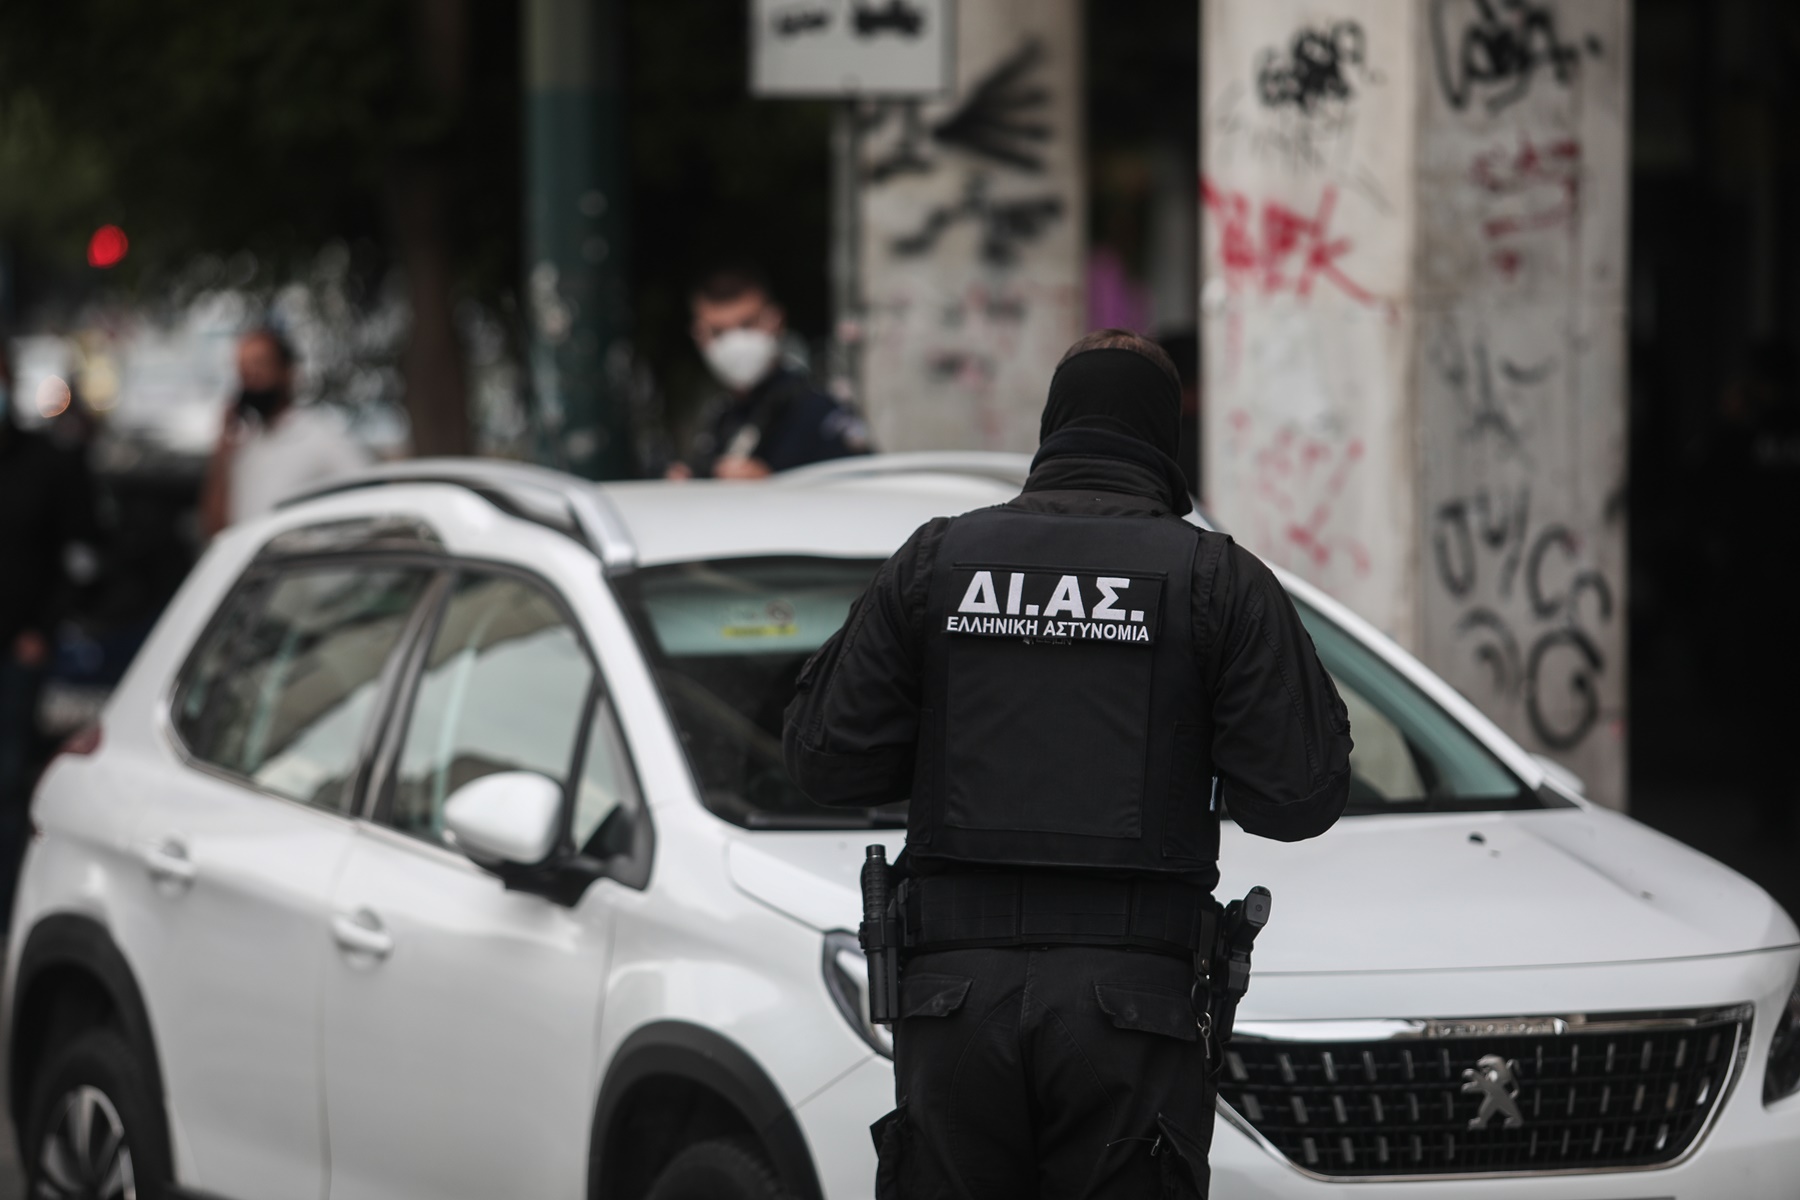 Καταδίωξη στο κέντρο της Αθήνας: Οδηγός επιχείρησε να εμβολίσει αστυνομικούς